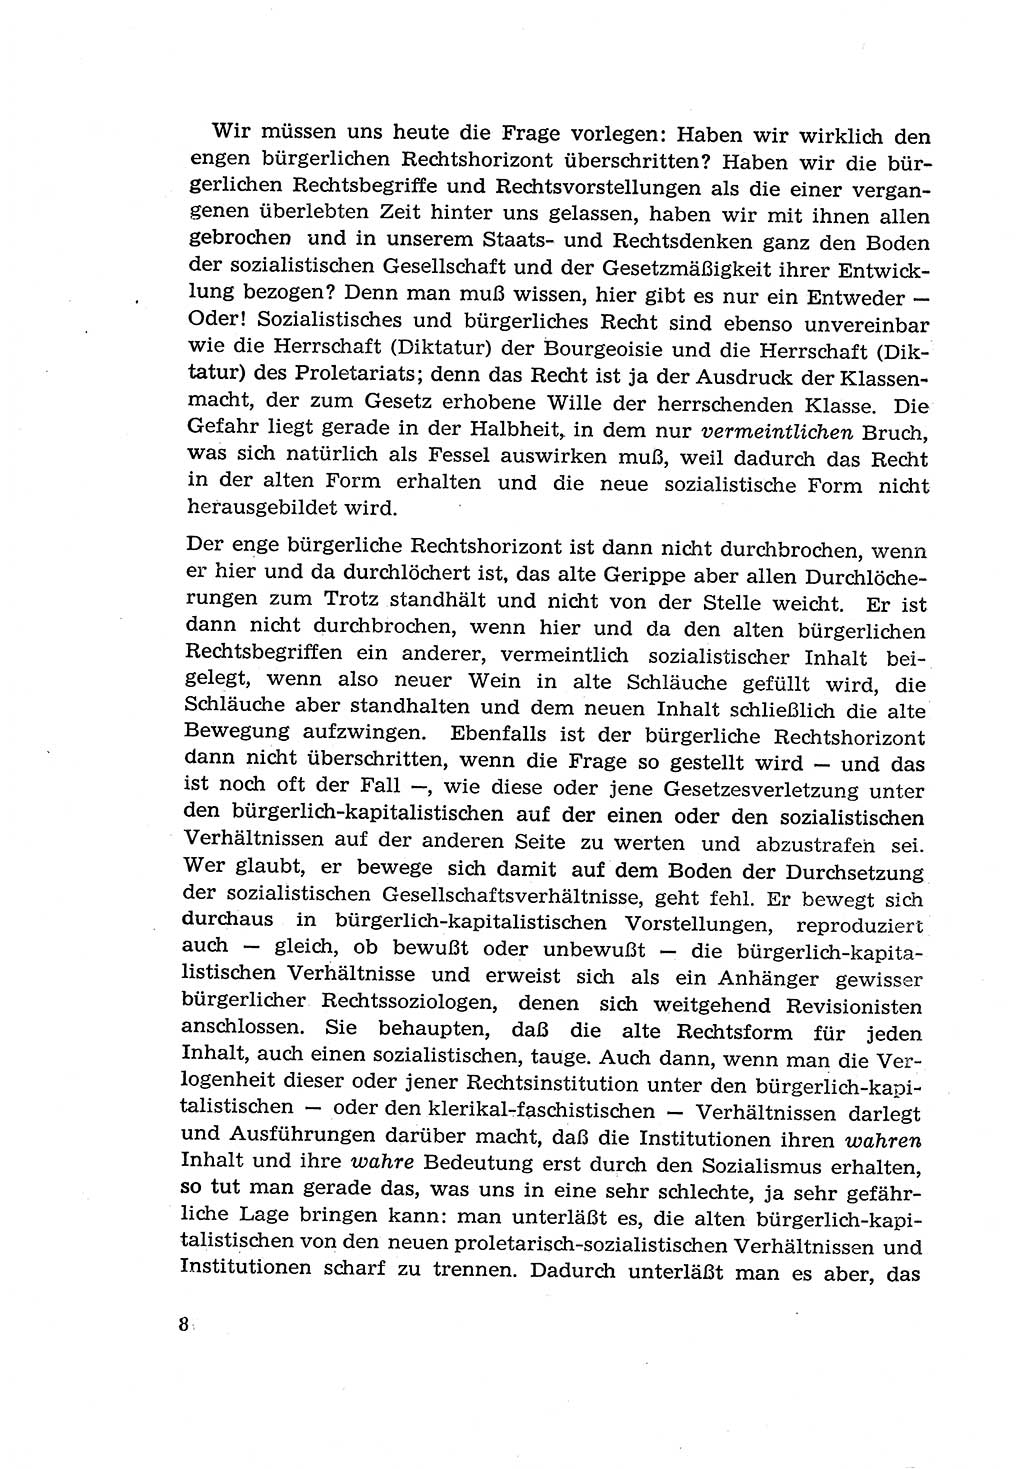 Zur Entwicklung des sozialistischen Strafrechts der Deutschen Demokratischen Republik (DDR) 1960, Seite 8 (Entw. soz. Strafr. DDR 1960, S. 8)